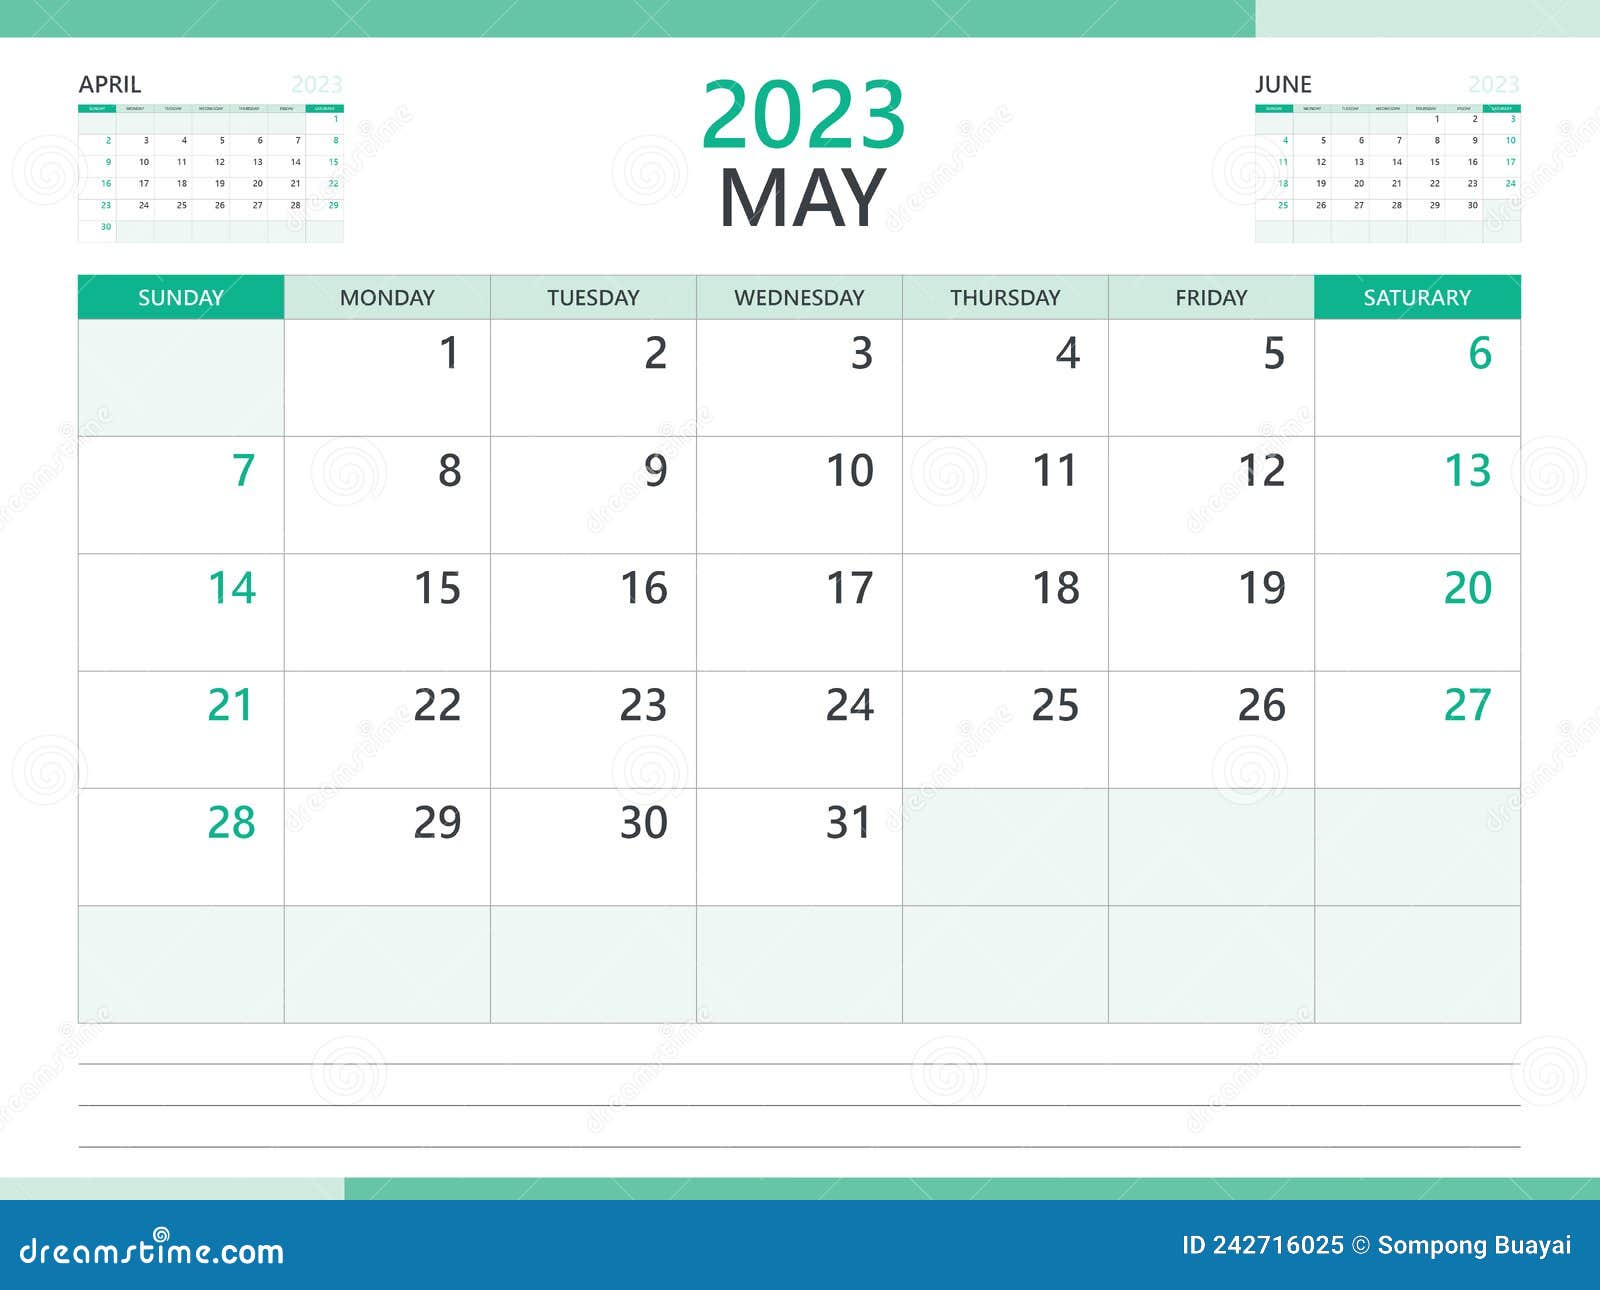 Tận dụng thời gian với lịch tường tháng 5 2024 với những hình ảnh thiên nhiên đẹp nhất. Lịch tường tháng năm 2024 này giúp bạn theo dõi các sự kiện, ngày lễ và kế hoạch quan trọng của mình một cách dễ dàng và hiệu quả nhất. Hãy bắt đầu một tháng mới đầy năng lượng với lịch tường tháng 5 2024 của bạn.